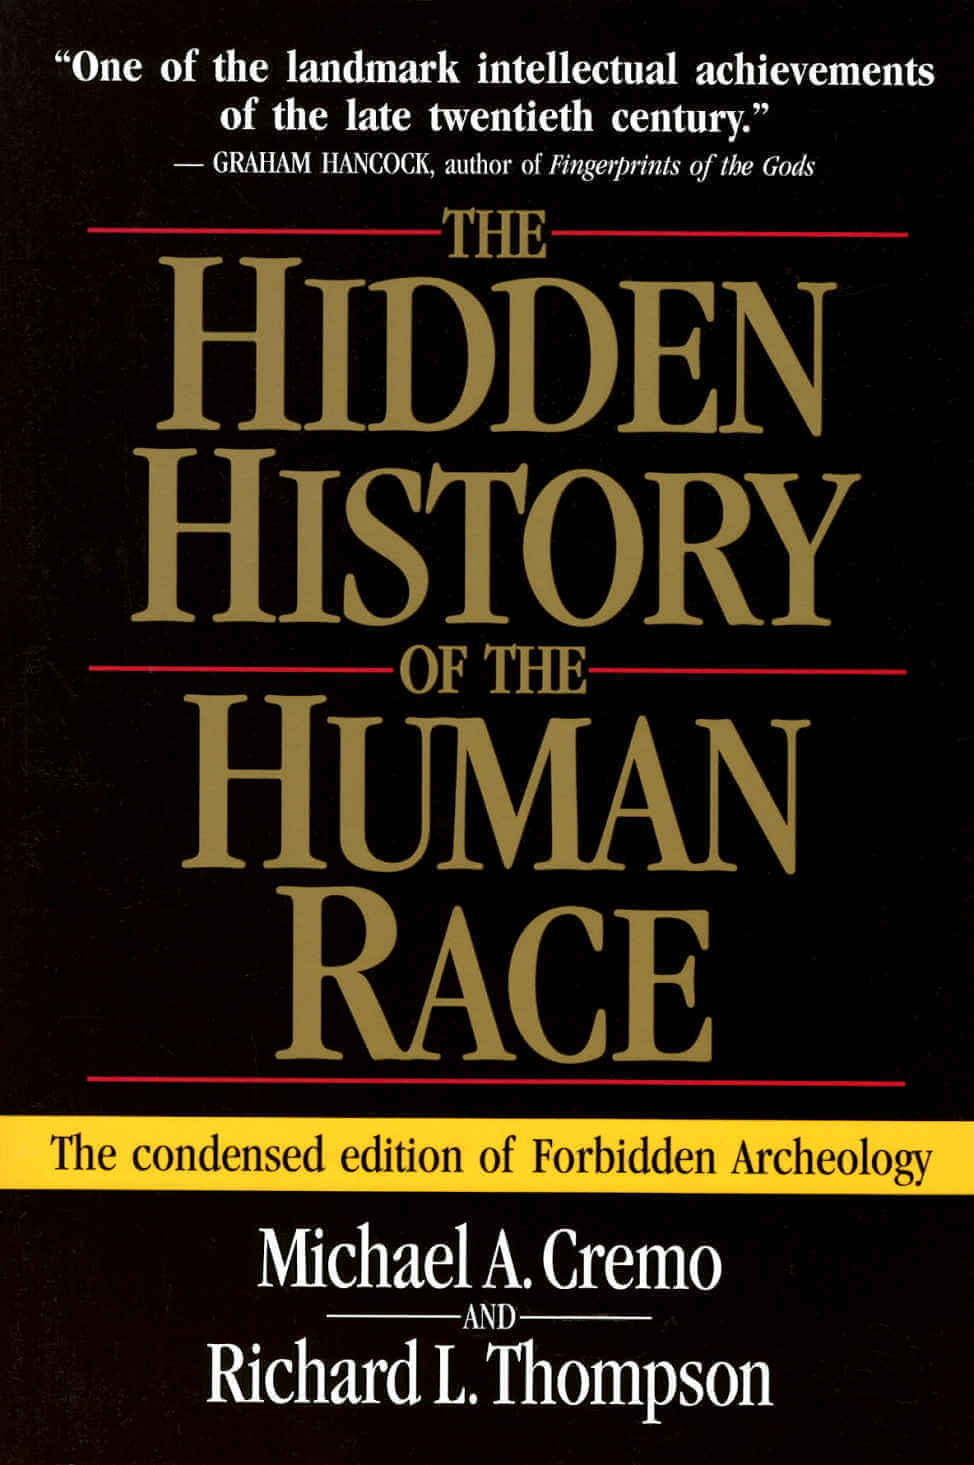 La historia oculta de la raza humana